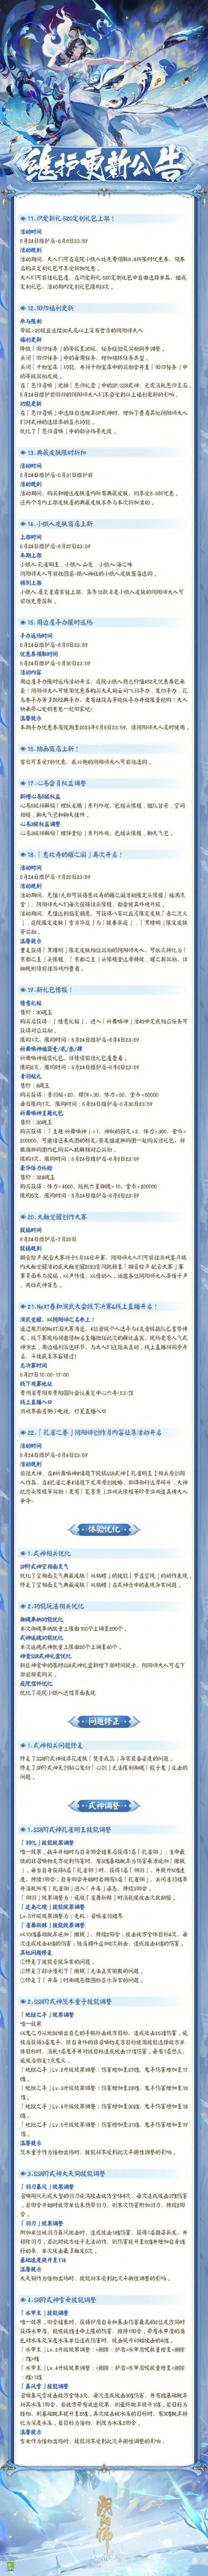 阴阳师5月24日更新了什么 阴阳师5.24更新内容介绍